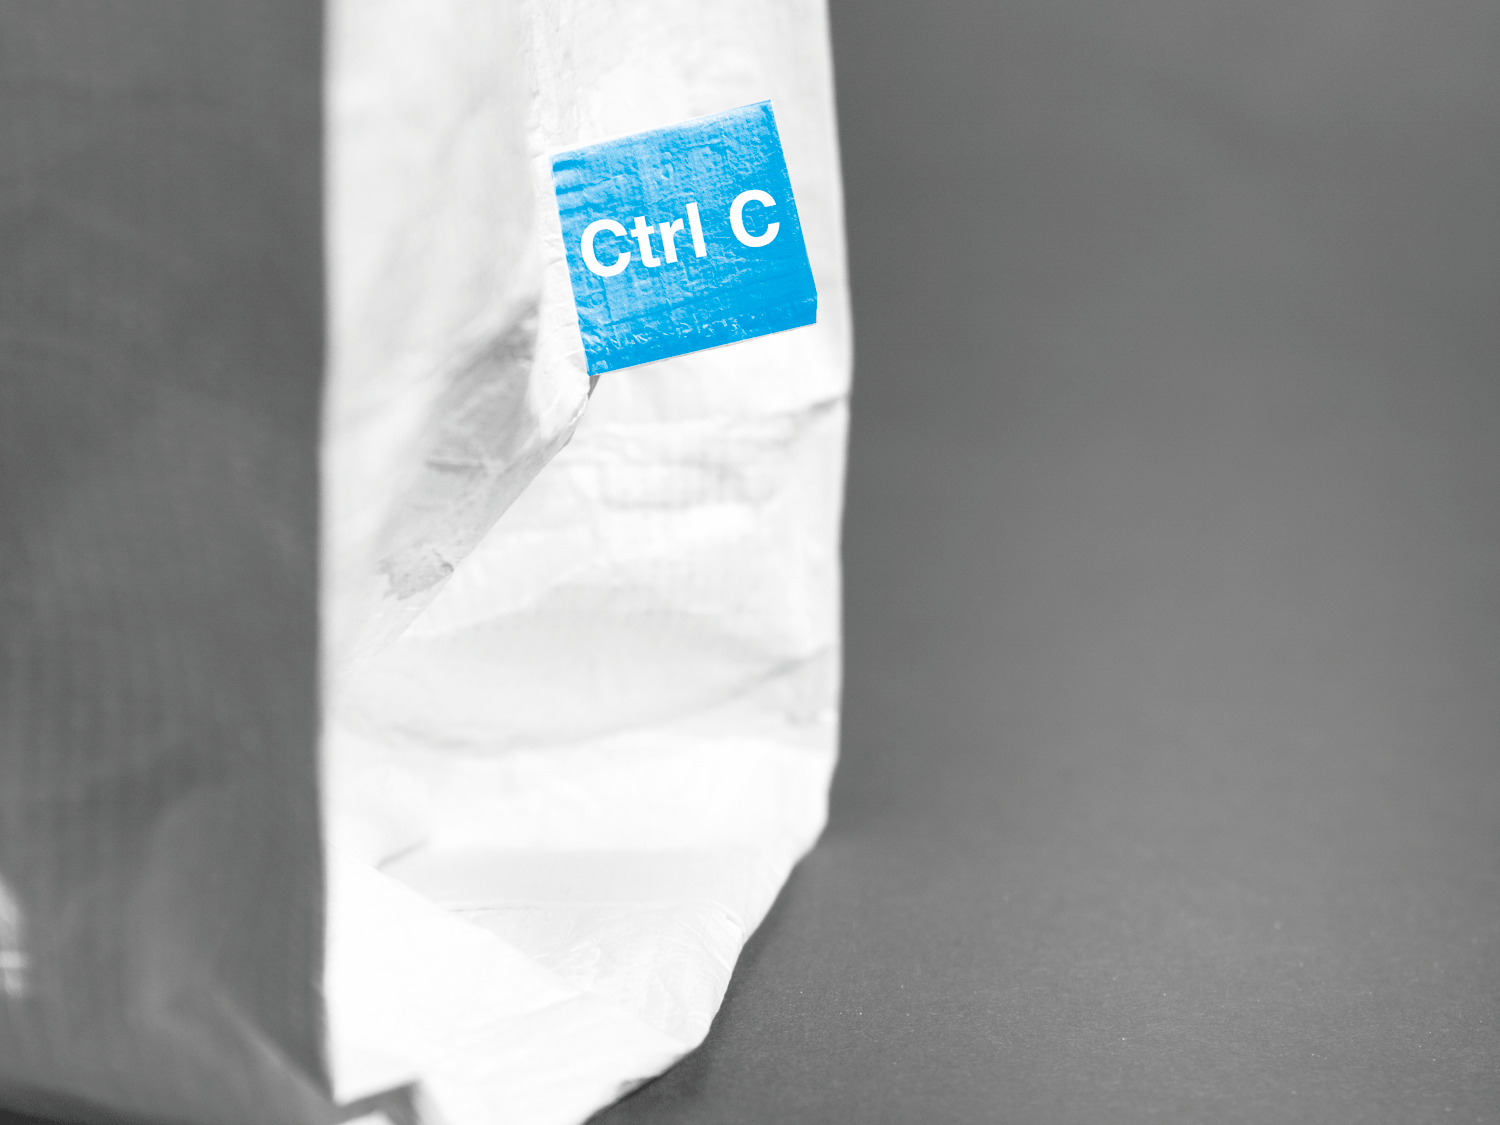 Man sieht einen seitlichen Ausschnitt des unteren Teils des Lunchbags an dem eine blaue Etikette mit der Marke Ctrl C befestigt ist.